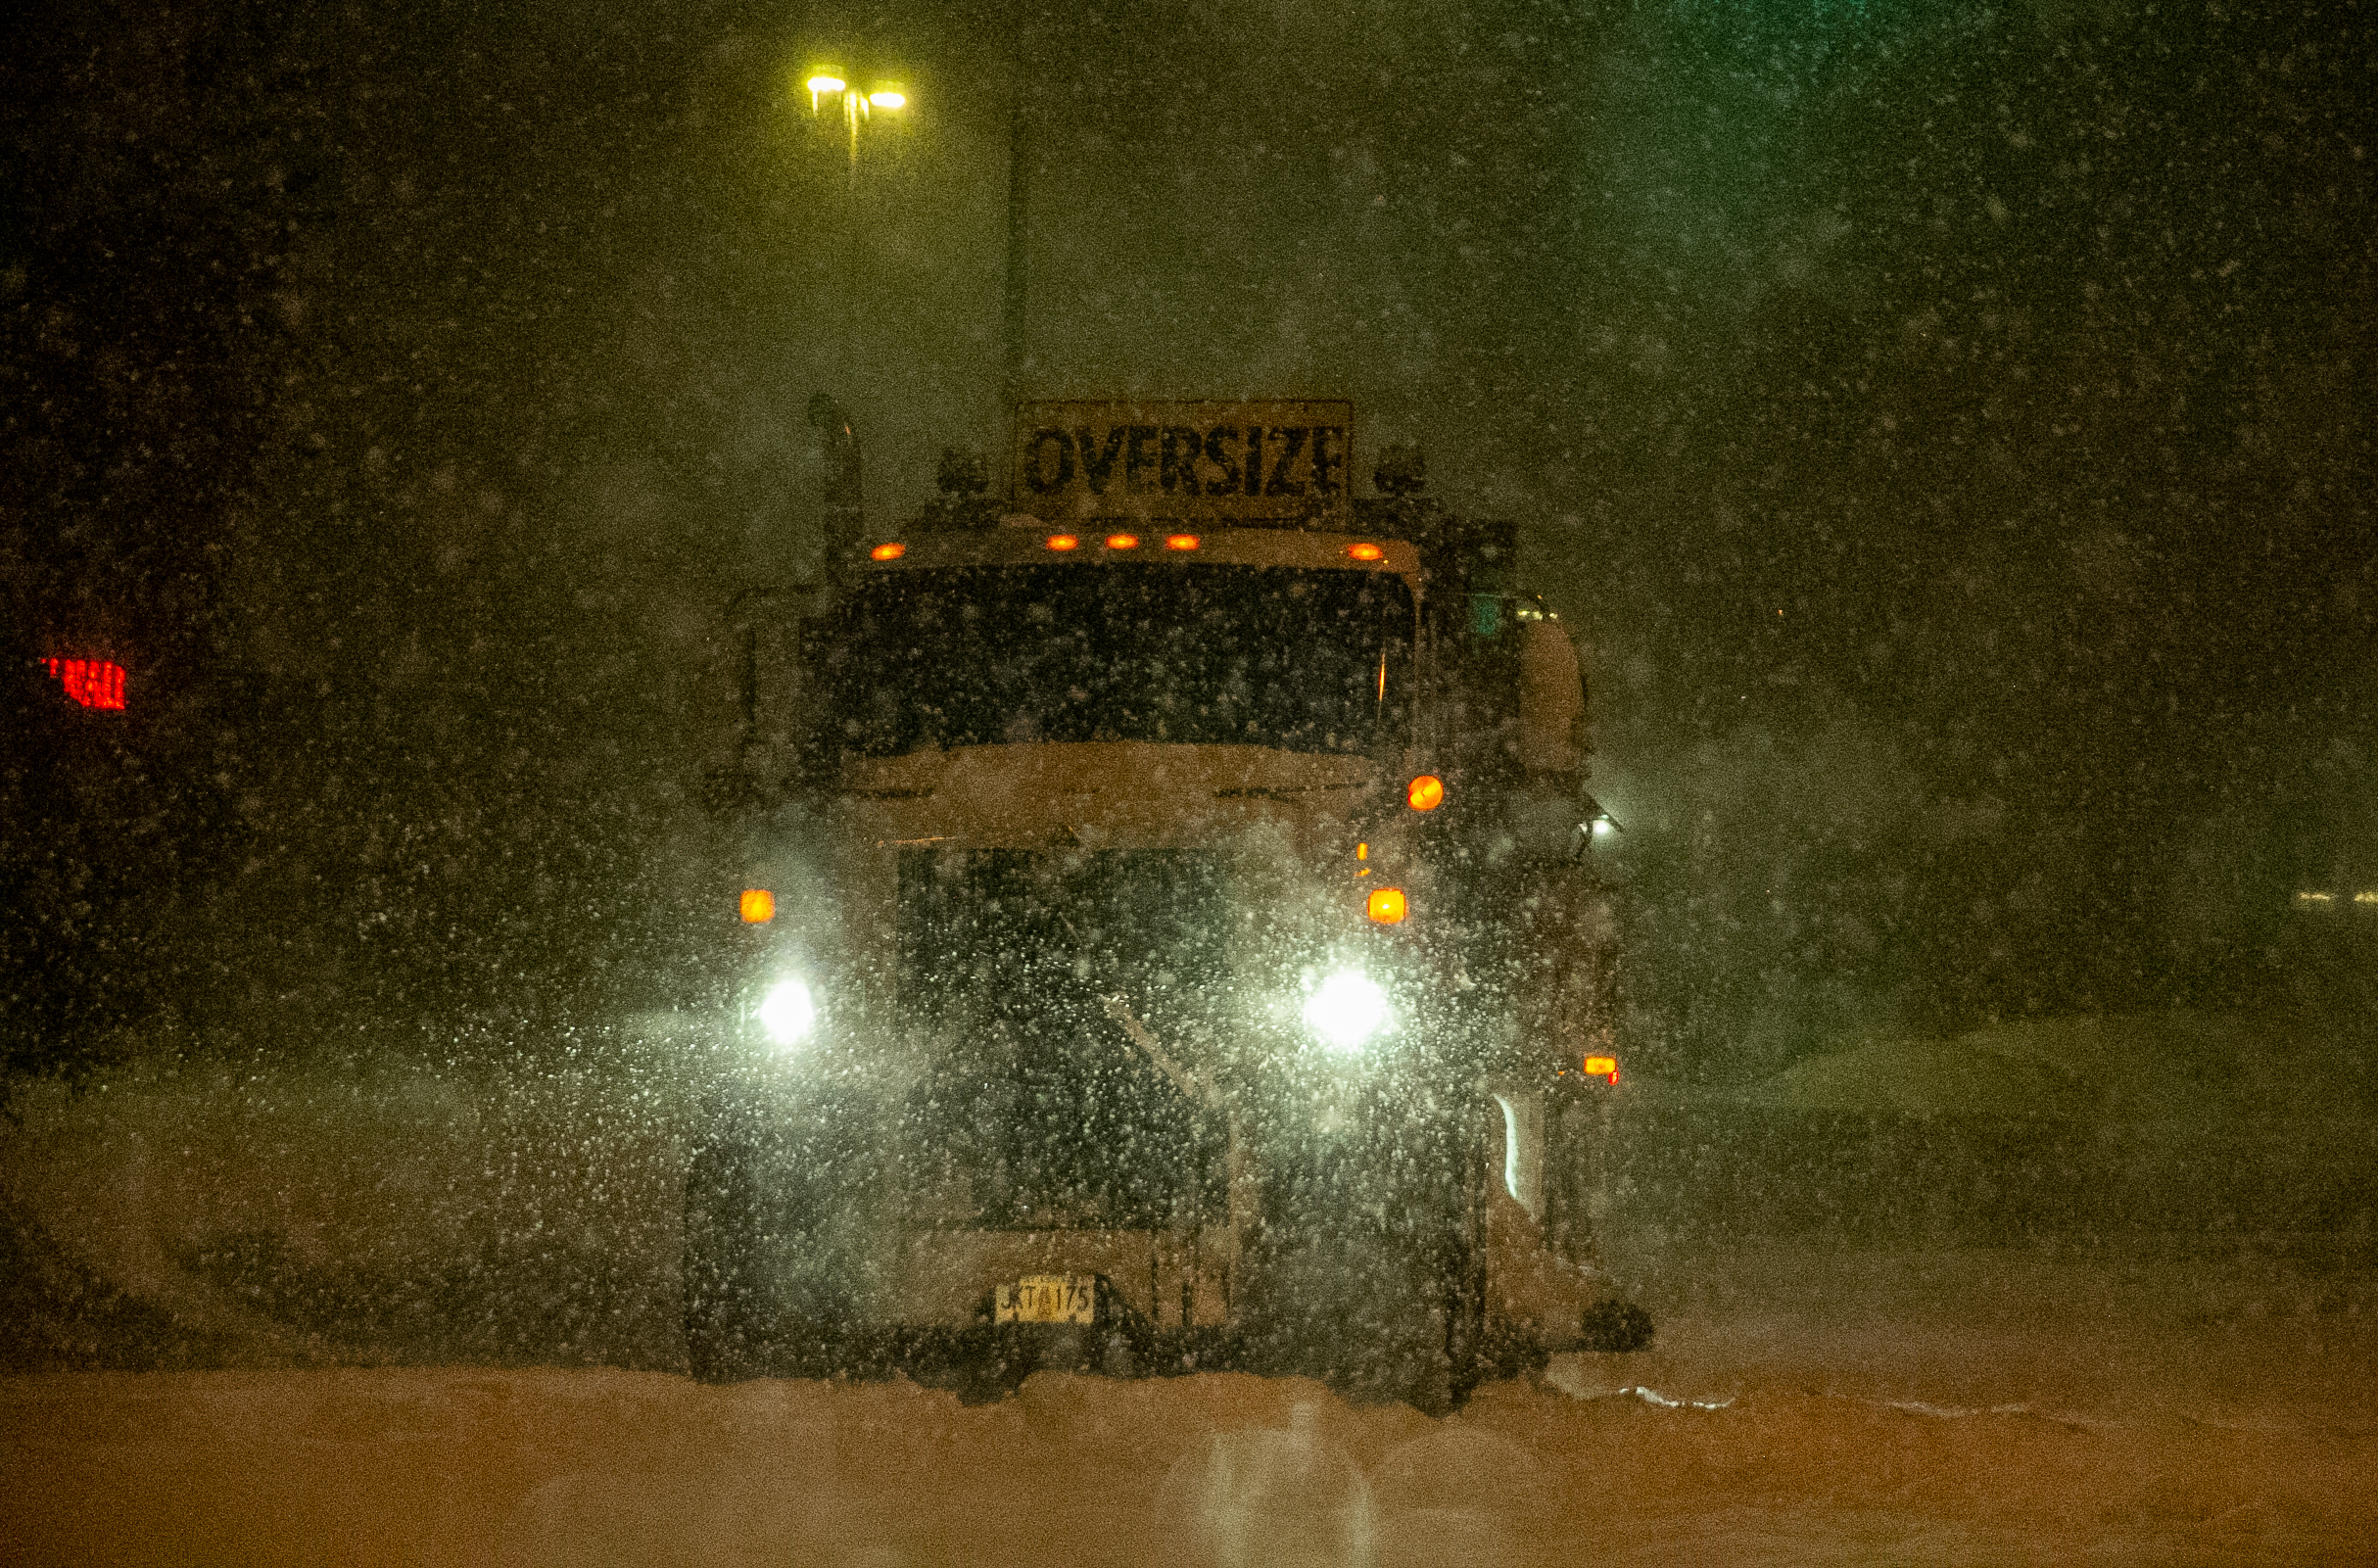 A large truck drives through a heavy snowfall.